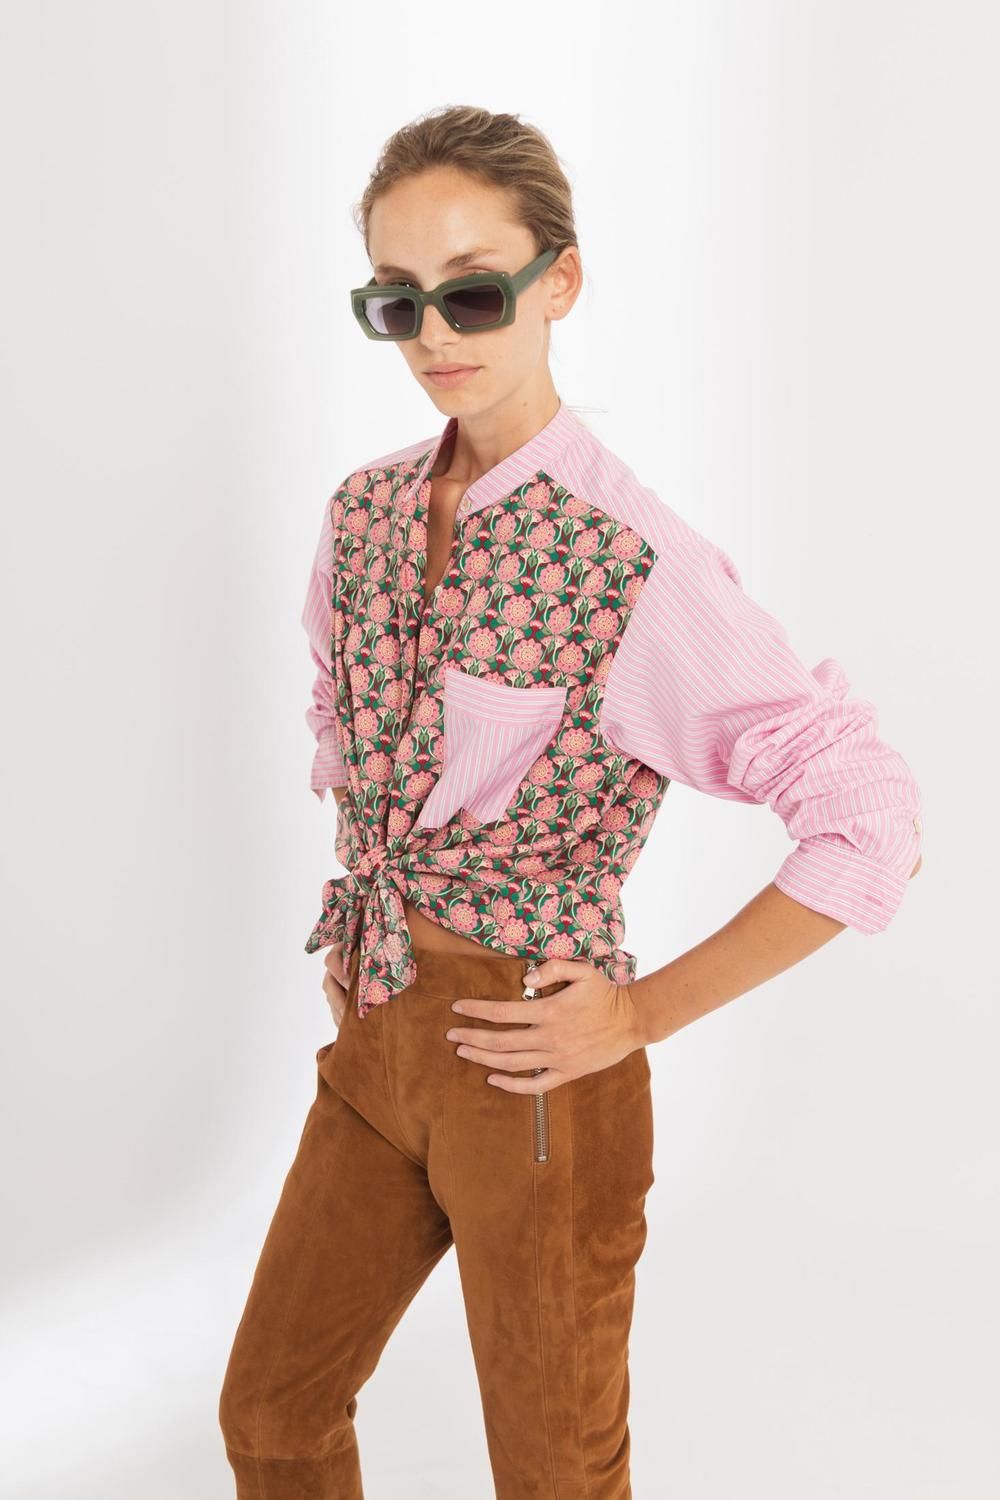 Camisa Luisa en Algodón - Mix de Flores y Rayas Rosa rosado s